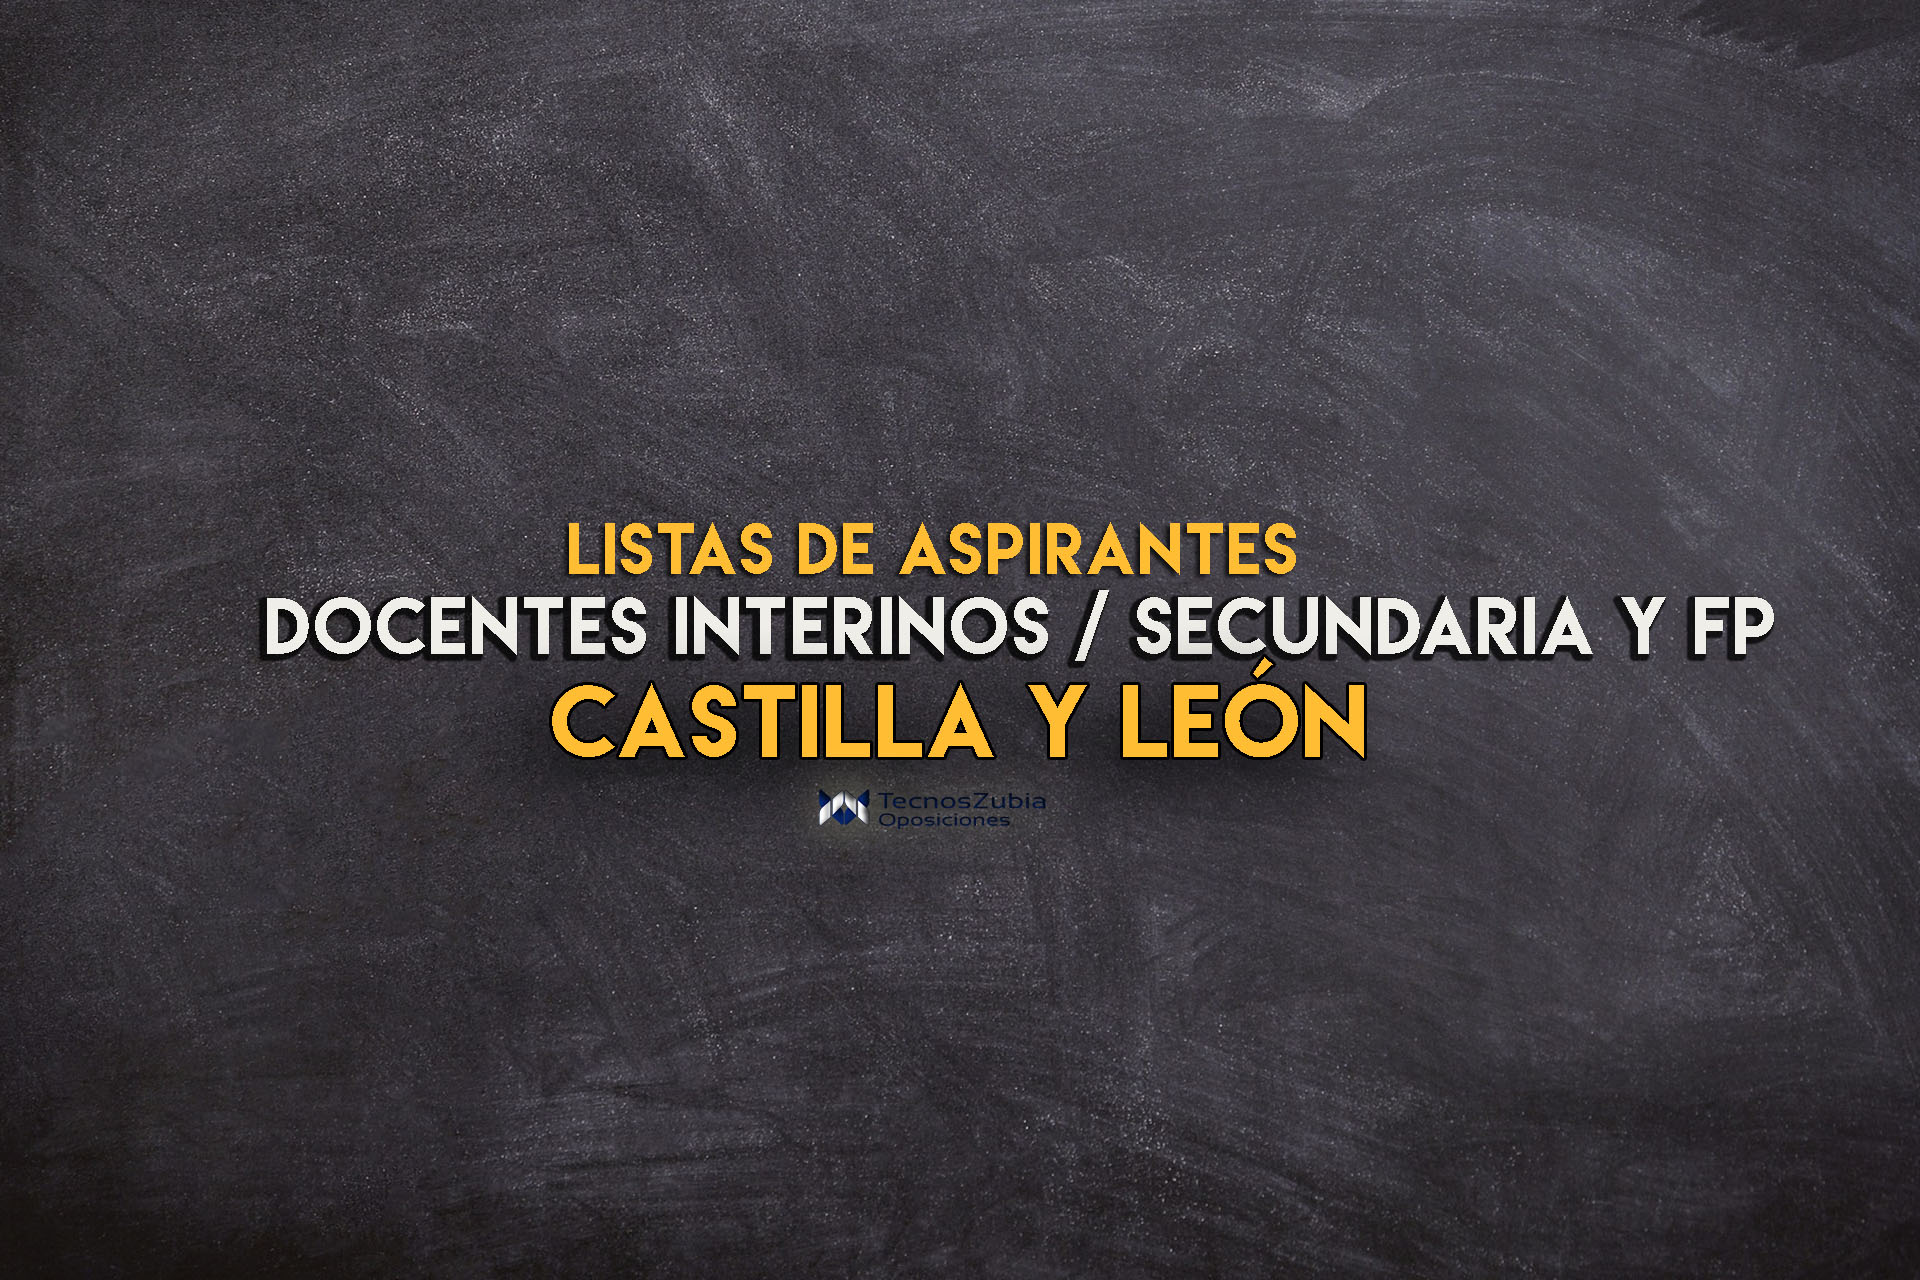 Castilla y León. lista de aspirantes docentes interinos / secundaria /fp